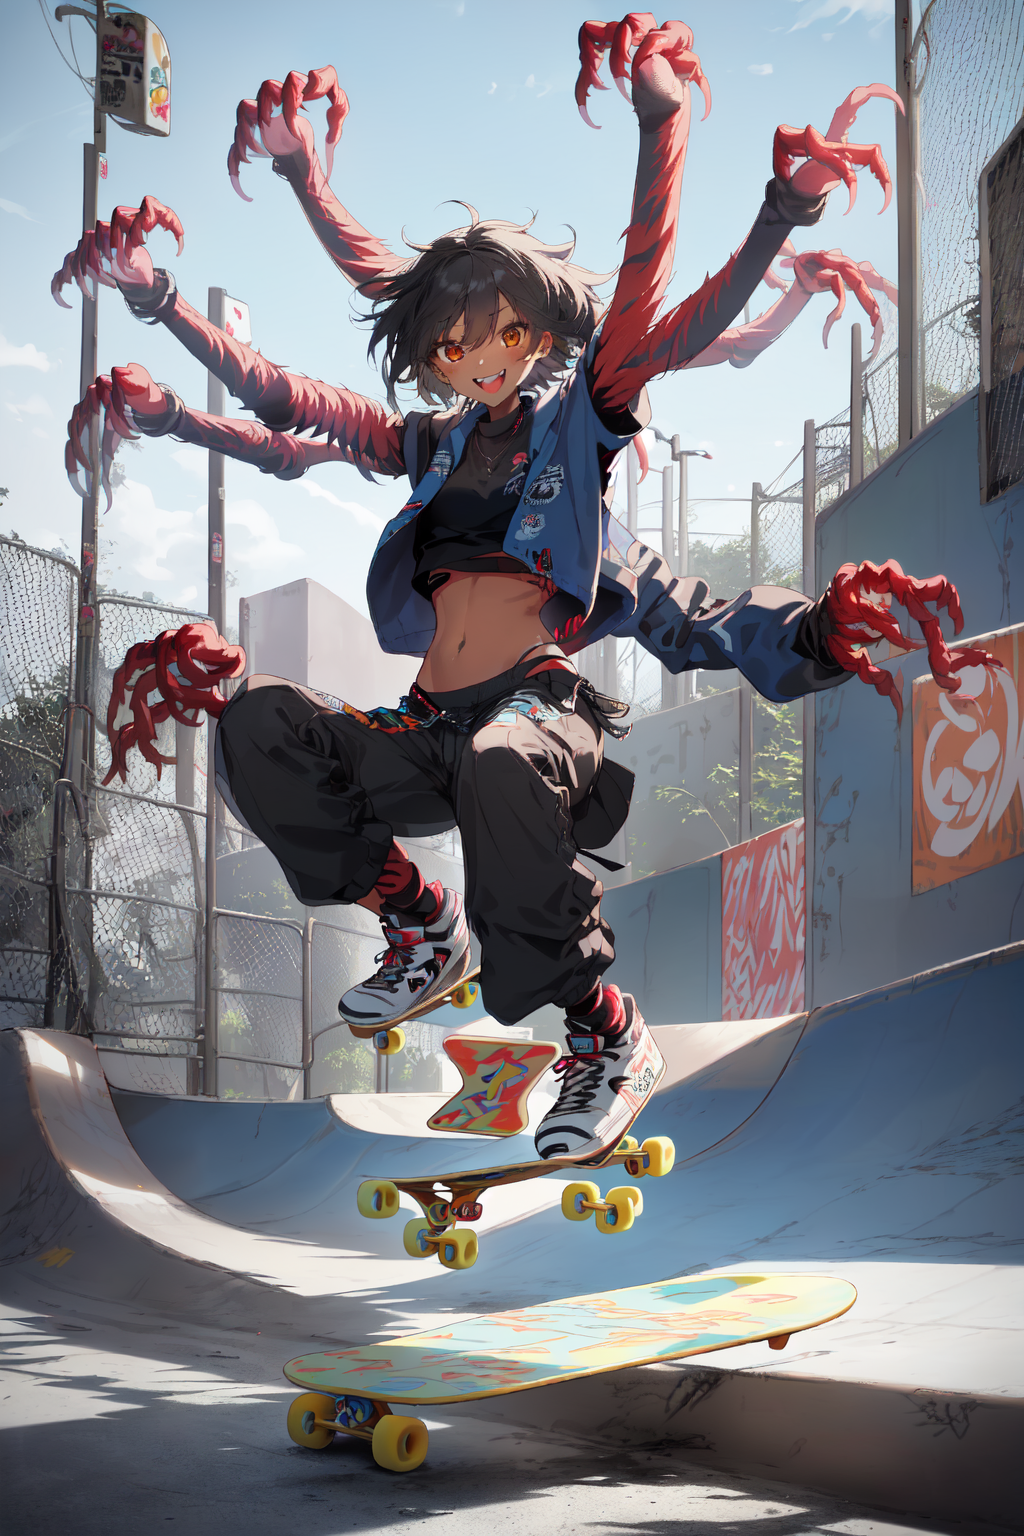 Anime skateboarding